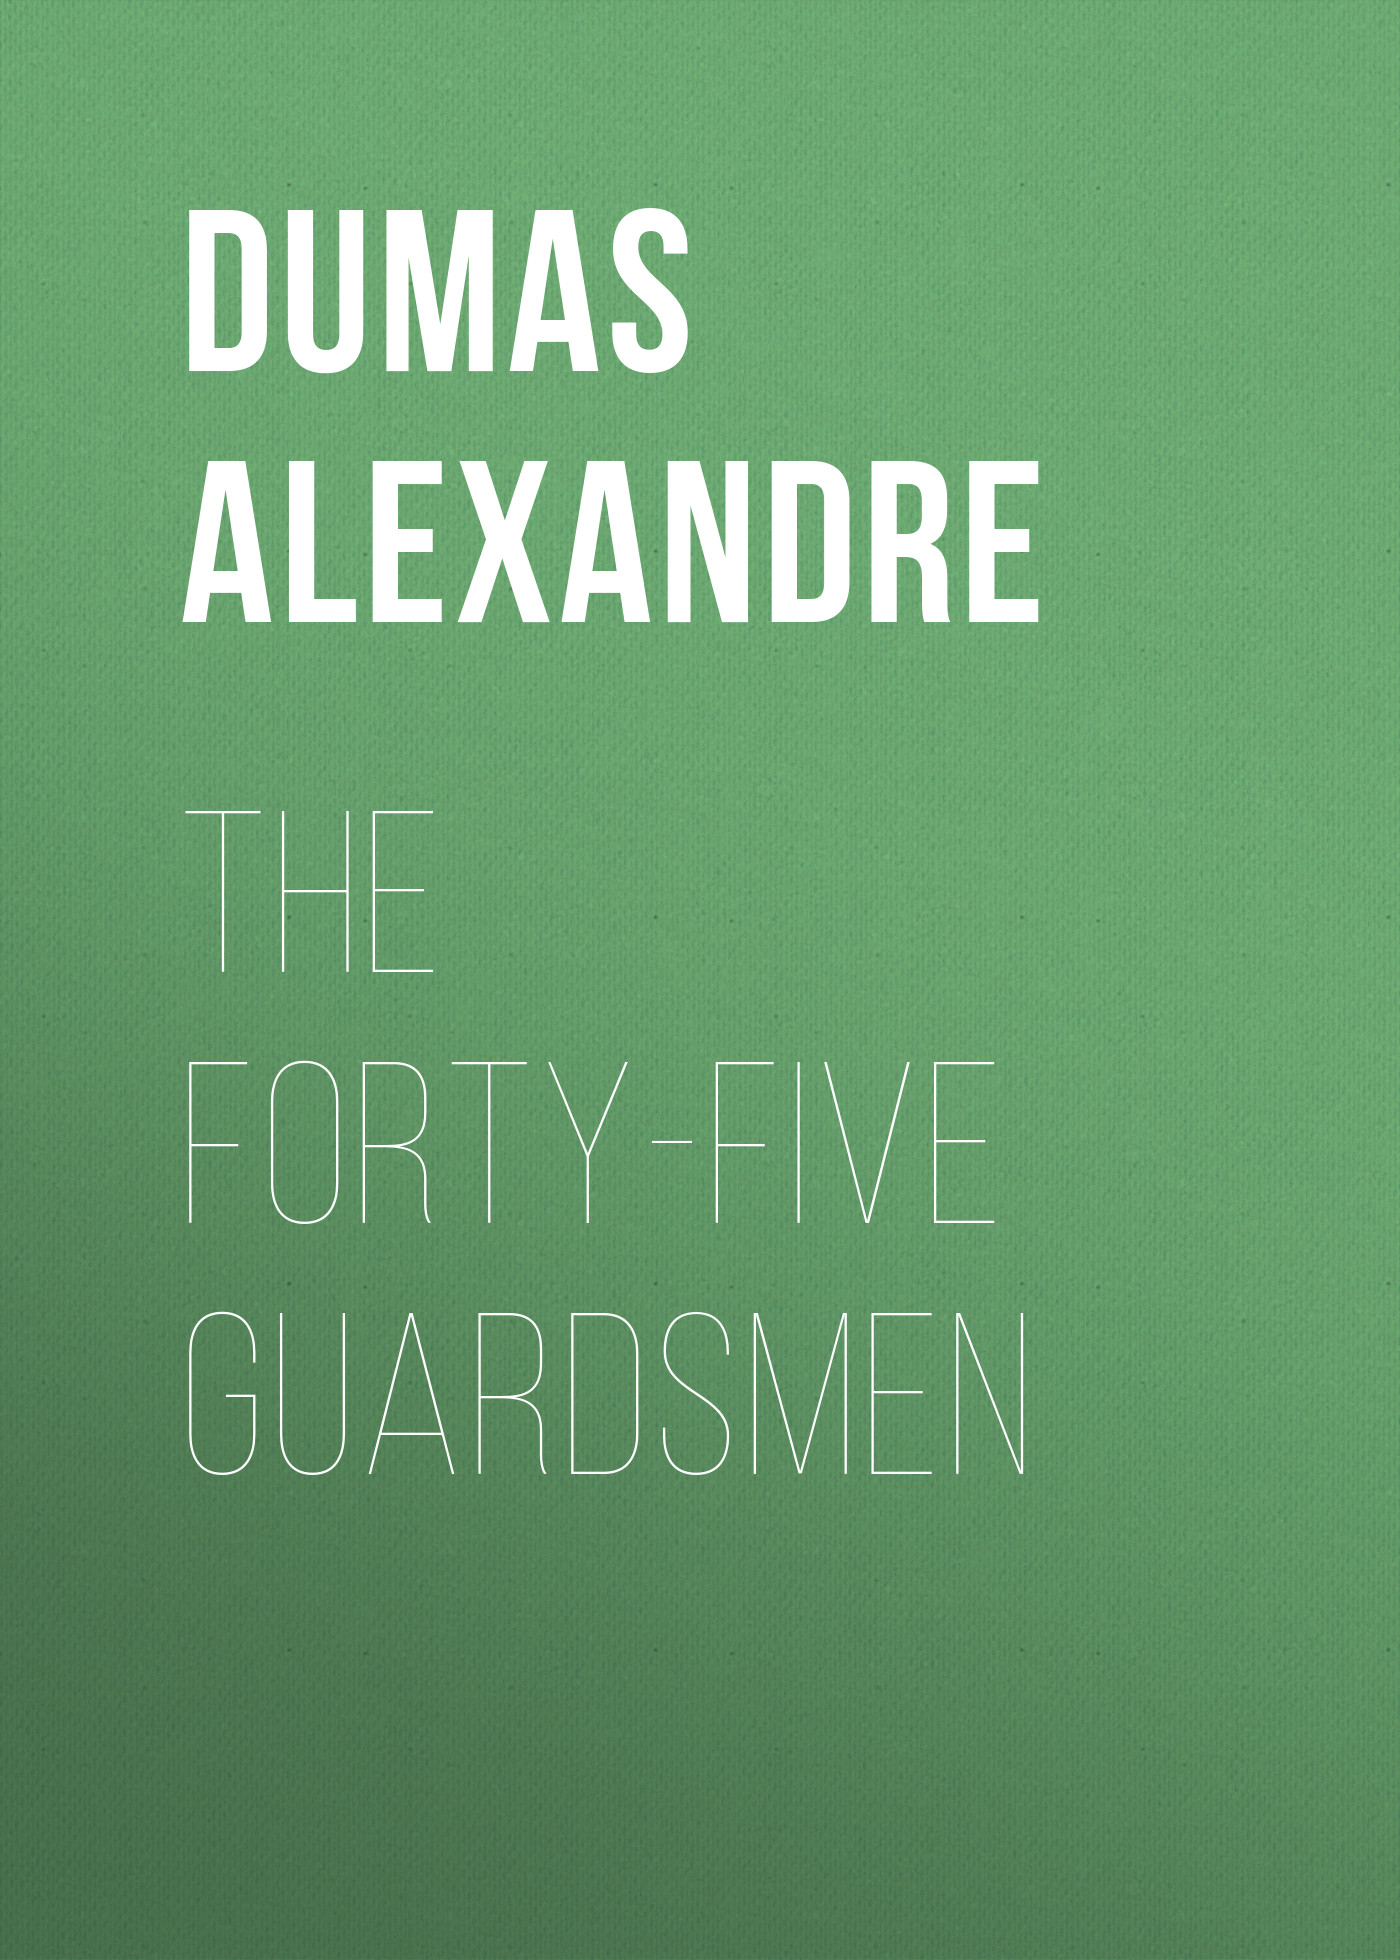 Книга The Forty-Five Guardsmen из серии , созданная Alexandre Dumas, может относится к жанру Литература 19 века, Зарубежная старинная литература, Зарубежная классика. Стоимость электронной книги The Forty-Five Guardsmen с идентификатором 25202335 составляет 0 руб.